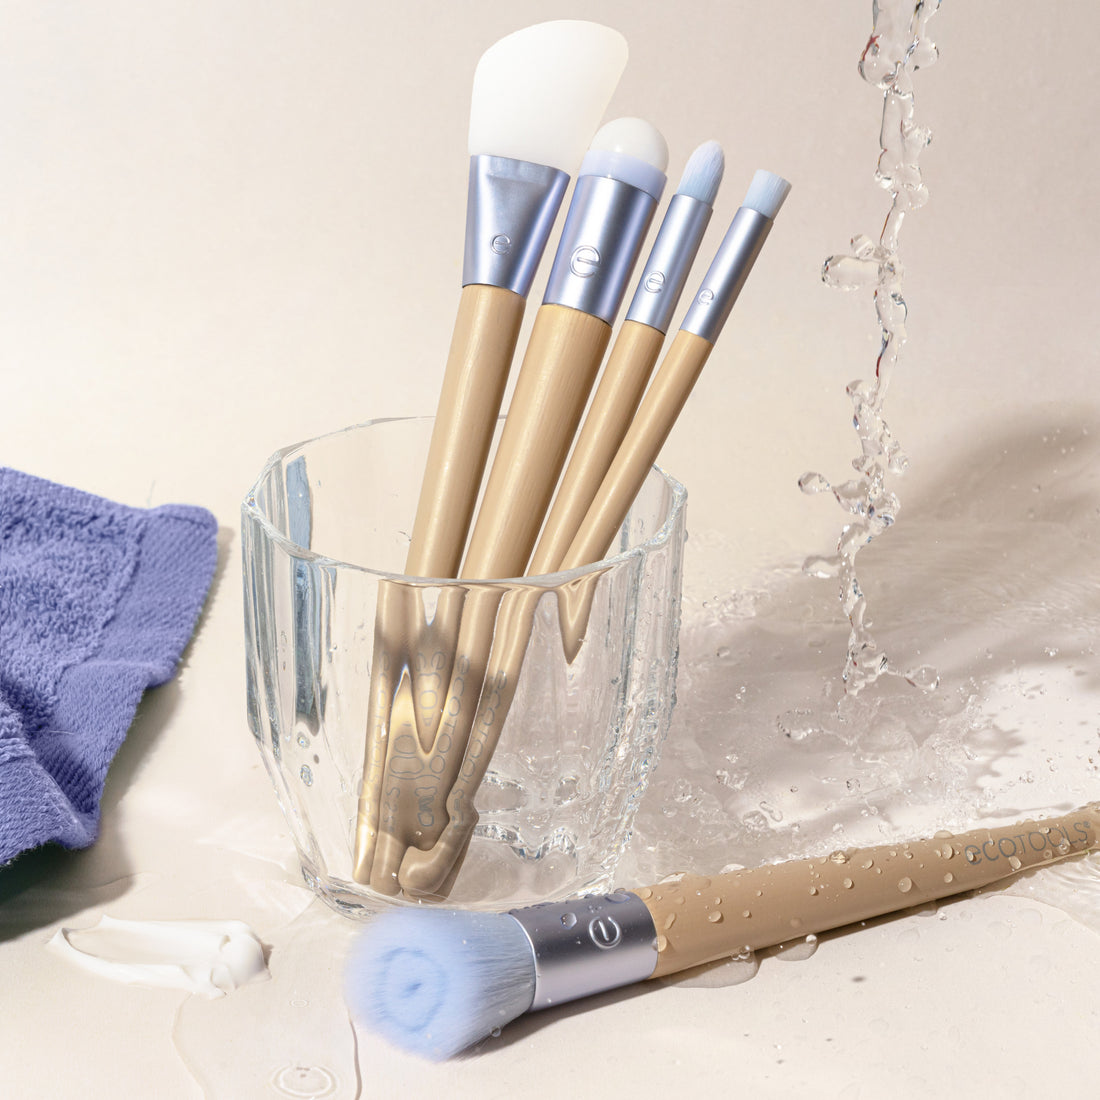 Elements Hydro-Glow Skincare Brush Kit – EcoTools Beauty